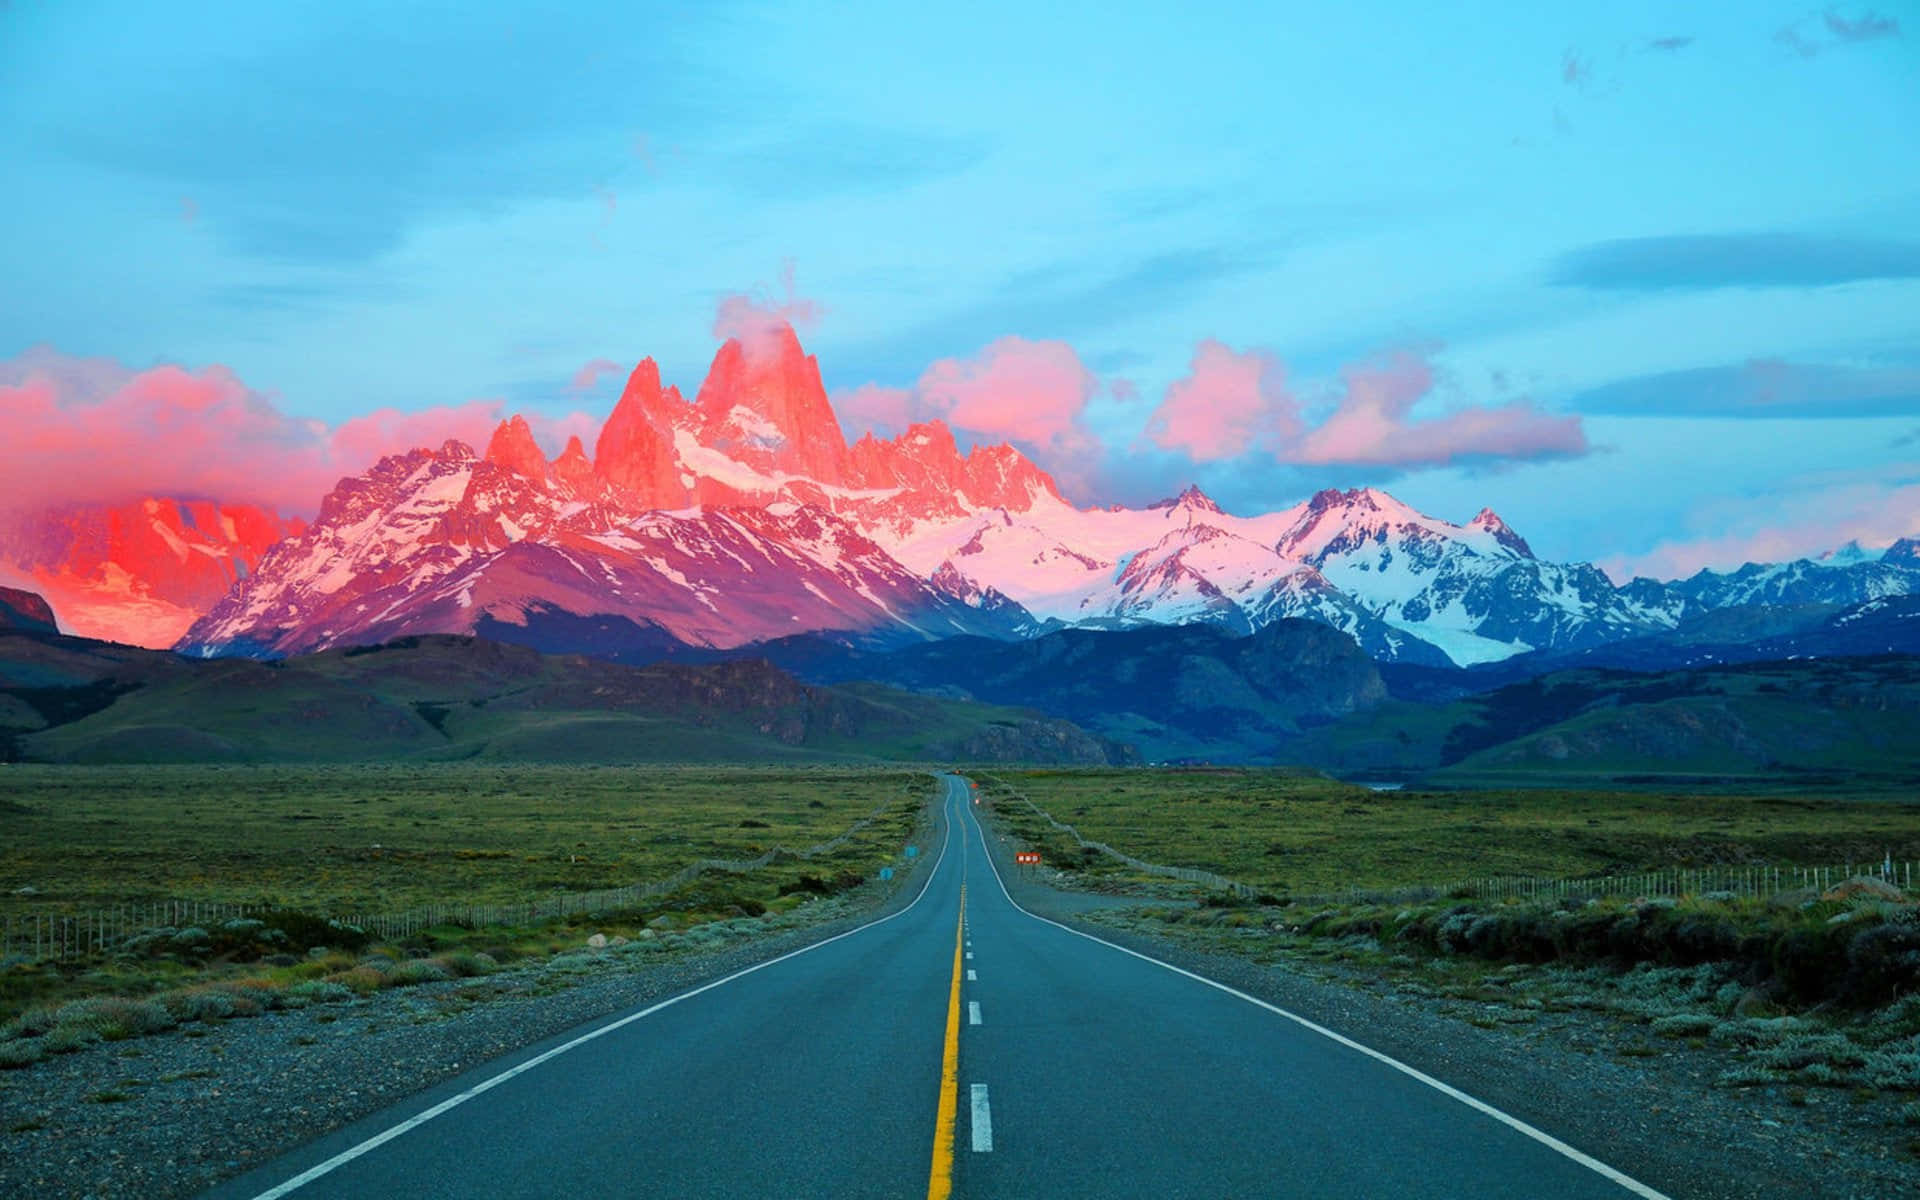 Tauchensie Ein In Die Ruhe Patagoniens Während Sie Die Unberührte Natur Erkunden